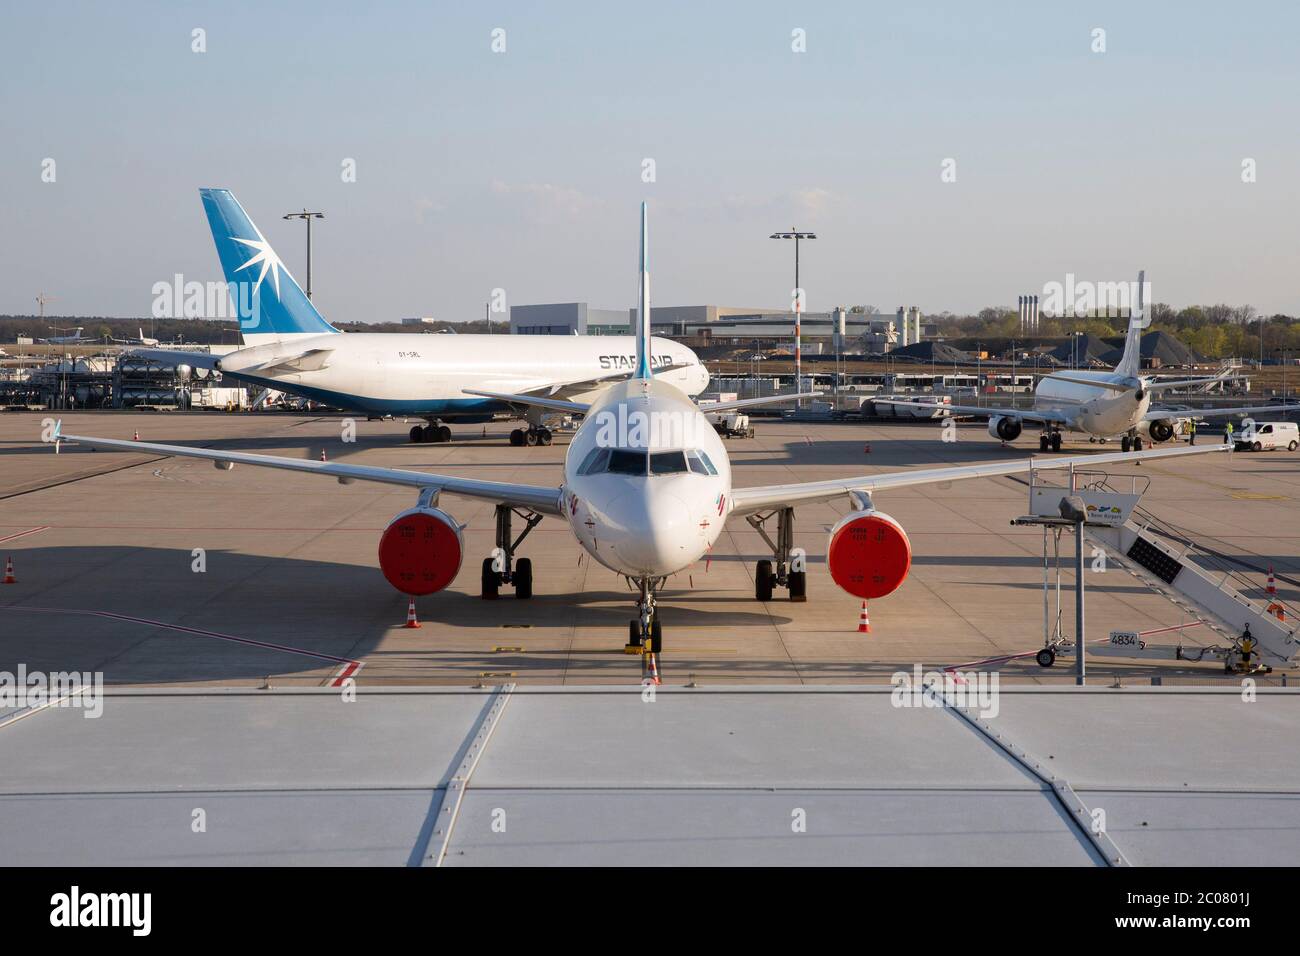 Abgestellte Flugzeuge nach vollständigem Erliegen des Personenflugverkehrs im Zusammenhang mit der Corona-Kise am Flughafen Köln/Bonn. Köln; 07.04.20 Foto de stock